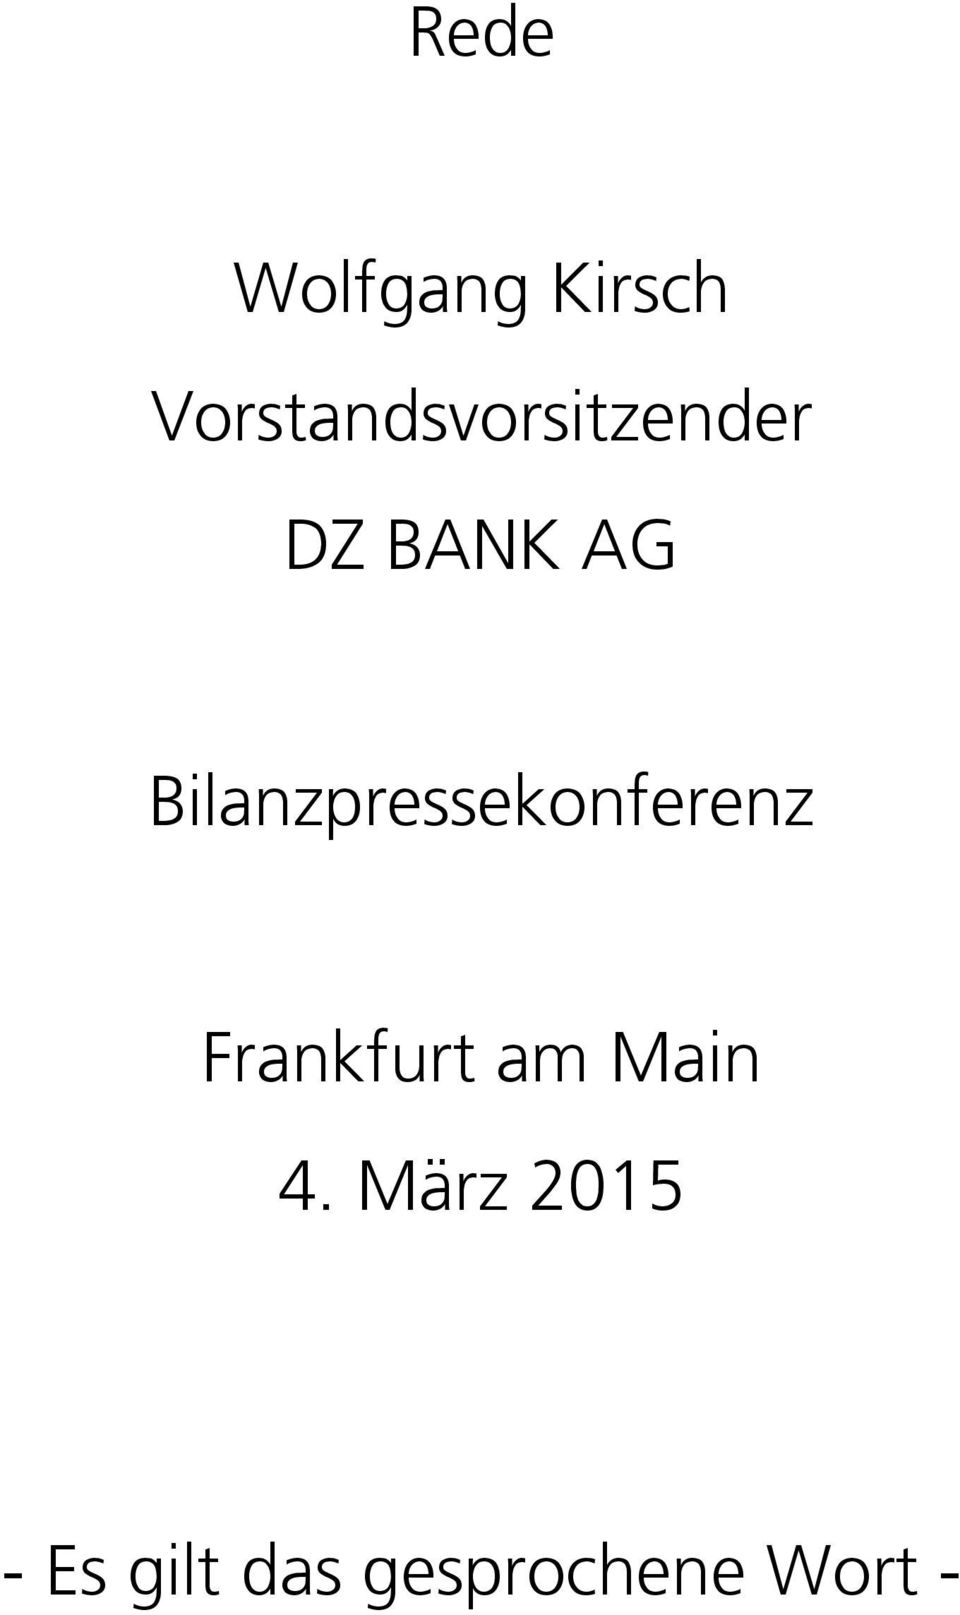 Bilanzpressekonferenz Frankfurt am